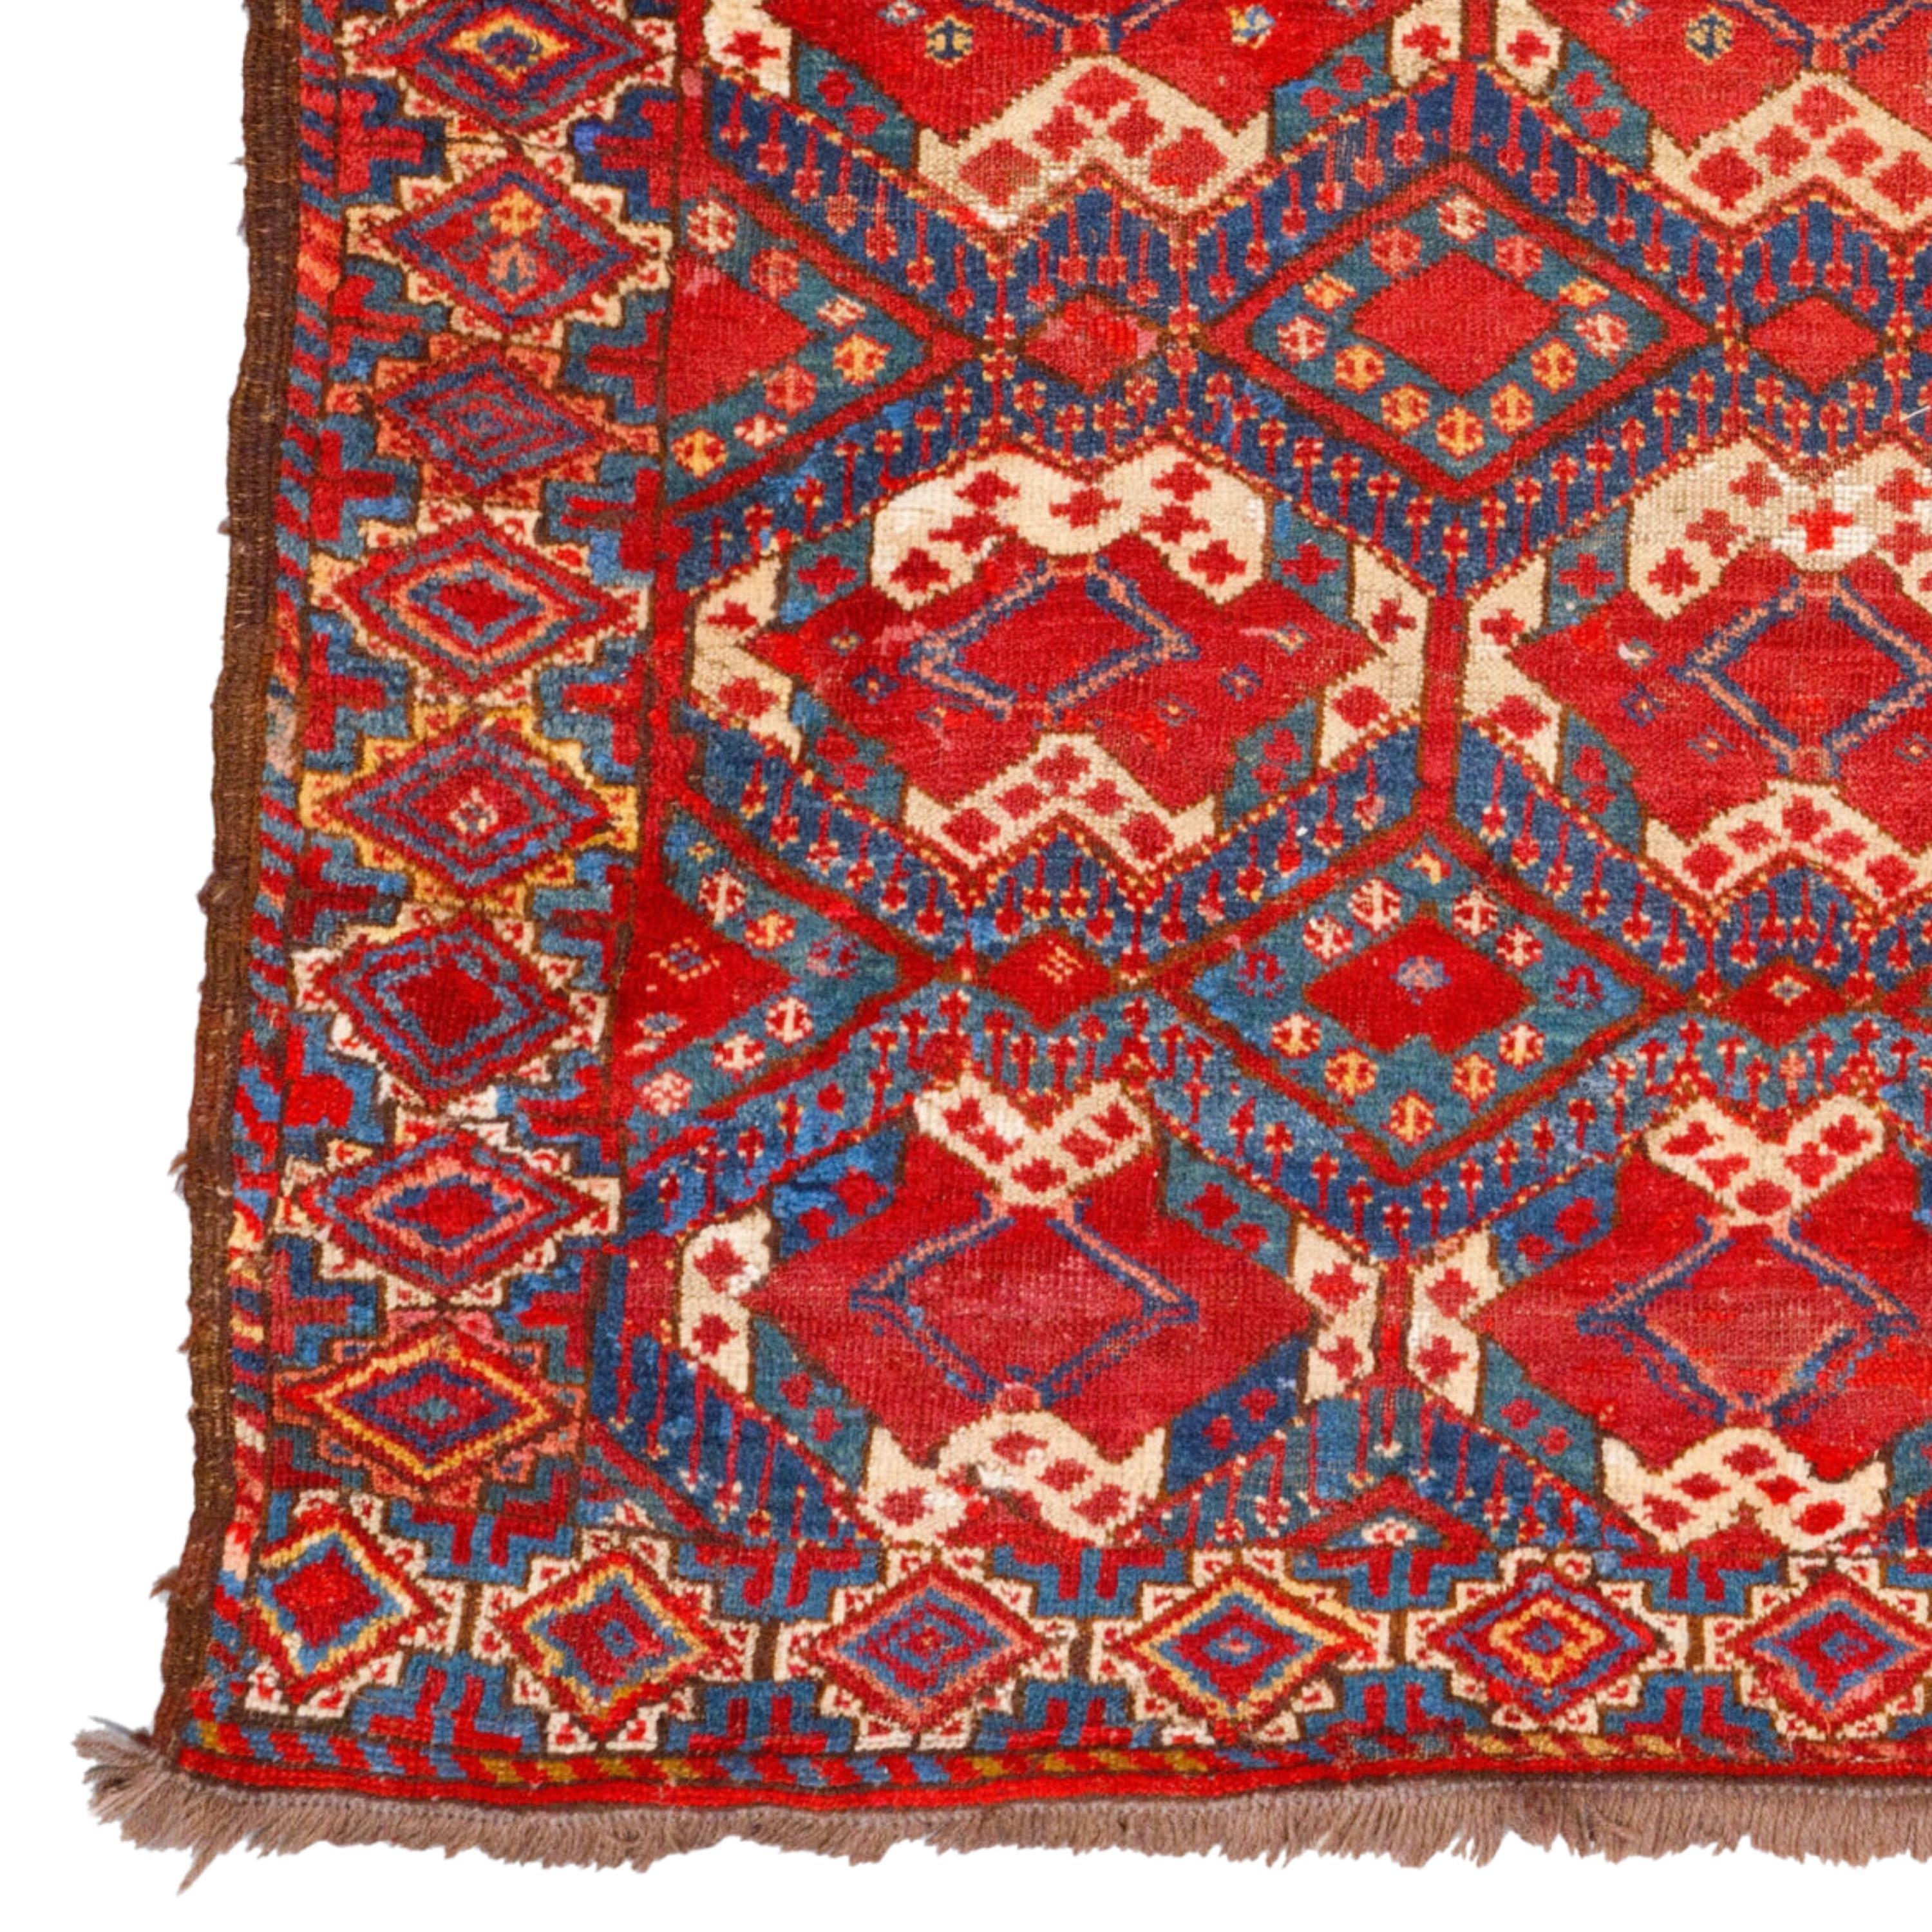 19. Jahrhundert Antike Beshir Engsi
Größe: 132×162 cm (51,96 x 63,77 Zoll)

Dieser elegante turkmenische Teppich Chodur Main ist ein Kunstwerk aus der Mitte des 19. Jahrhunderts. Dieser Teppich in satten Rot- und Burgundertönen ist für seine